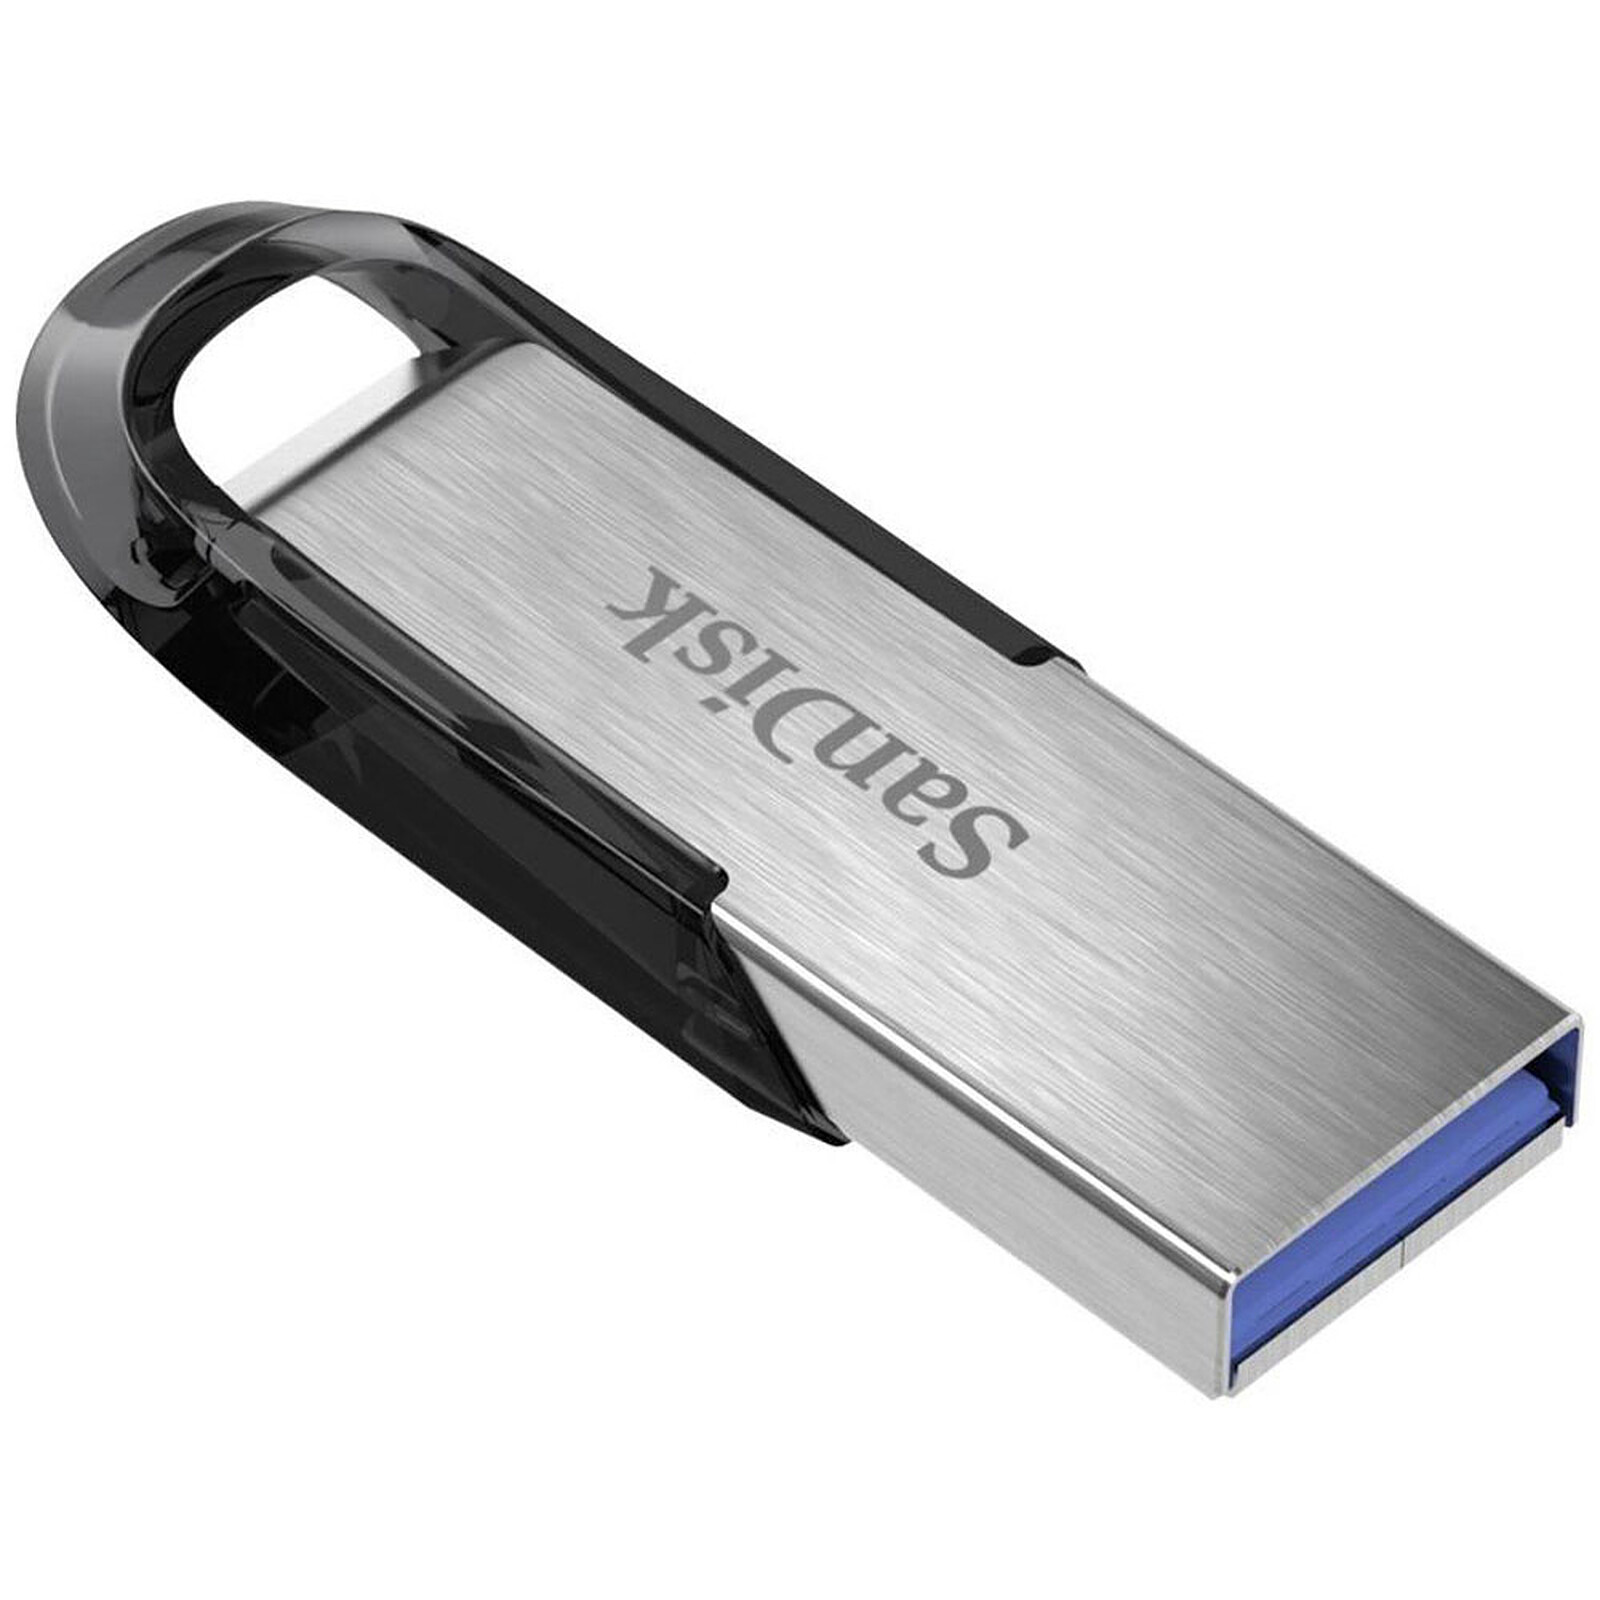 SanDisk Ultra Luxe 32 Go - Clé USB - LDLC